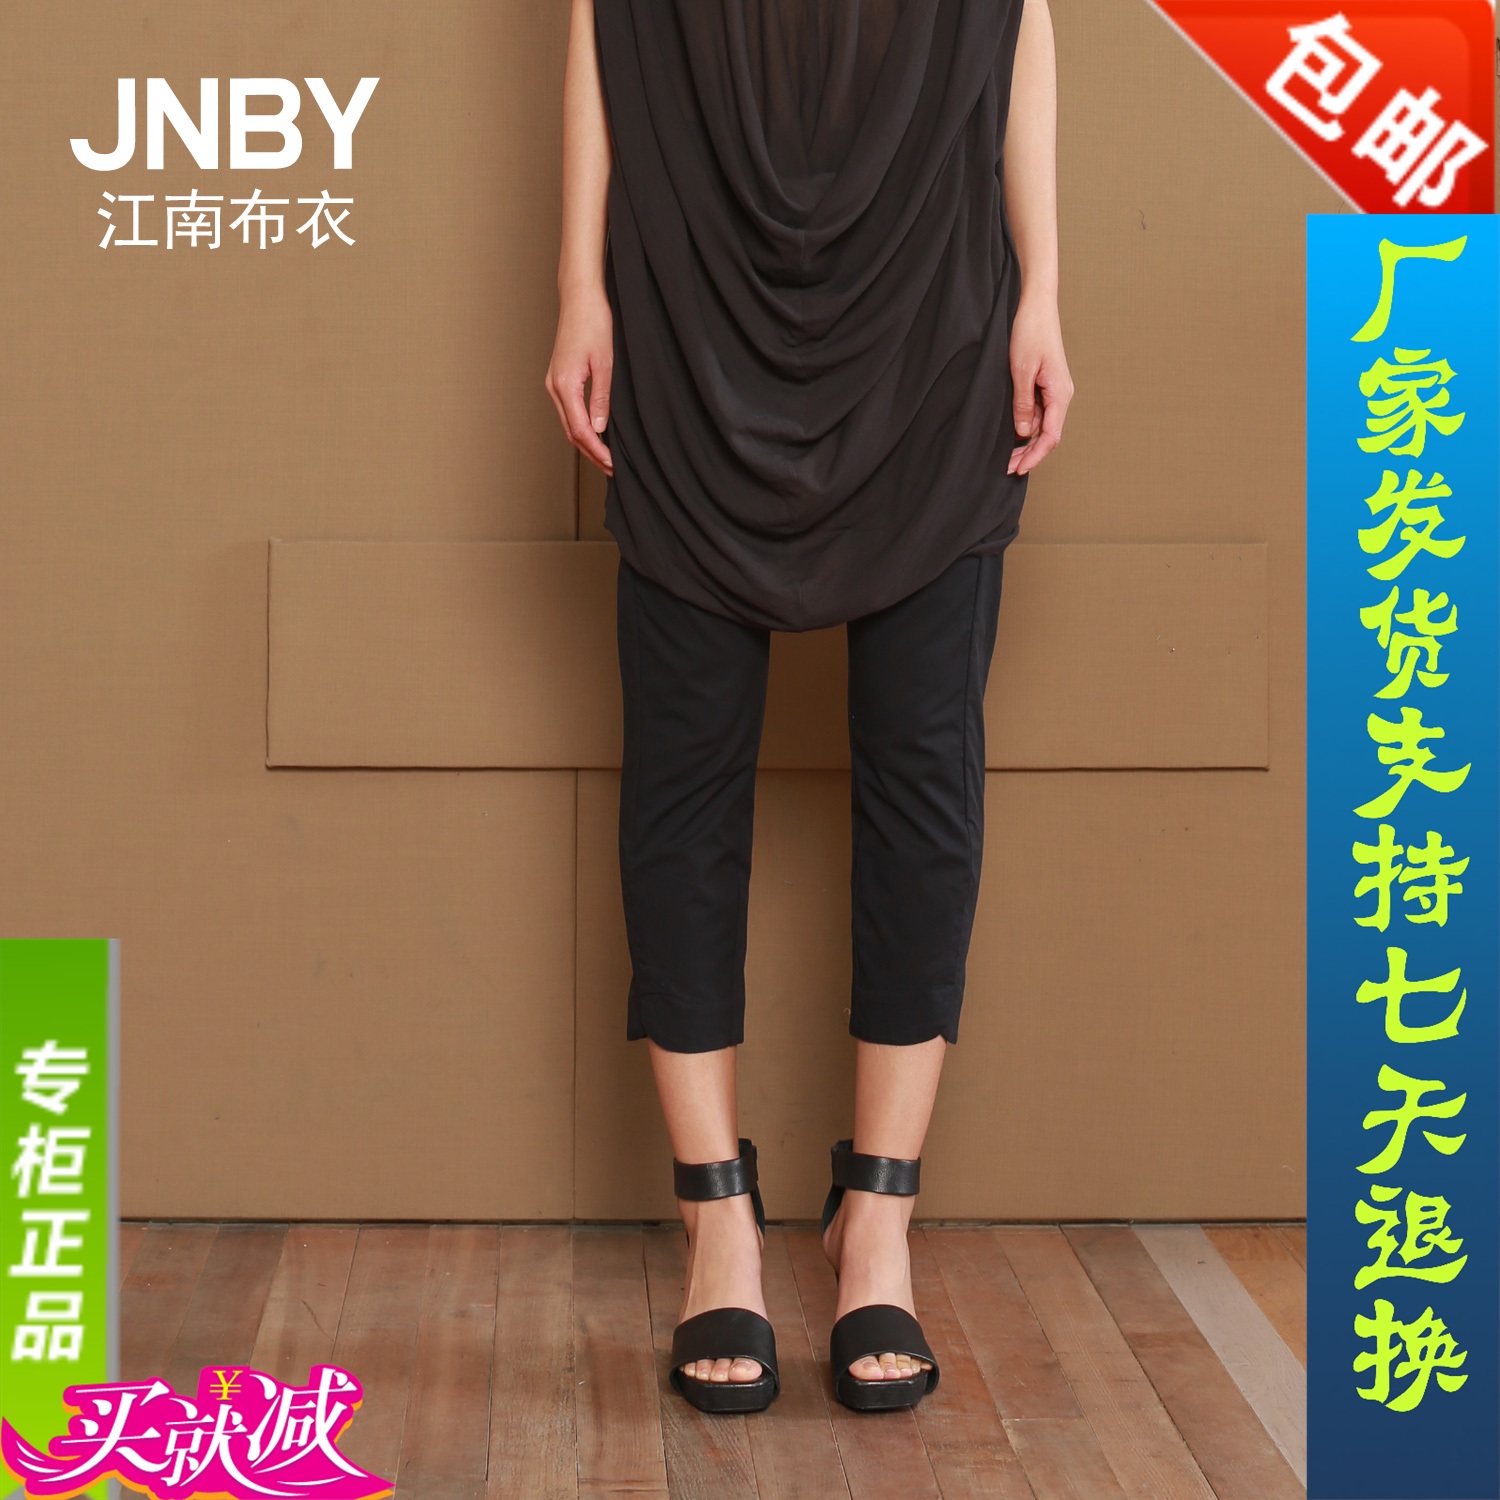 包邮JNBY江南布衣2015夏季七分裤新款裤长裤女休闲裤5C53022